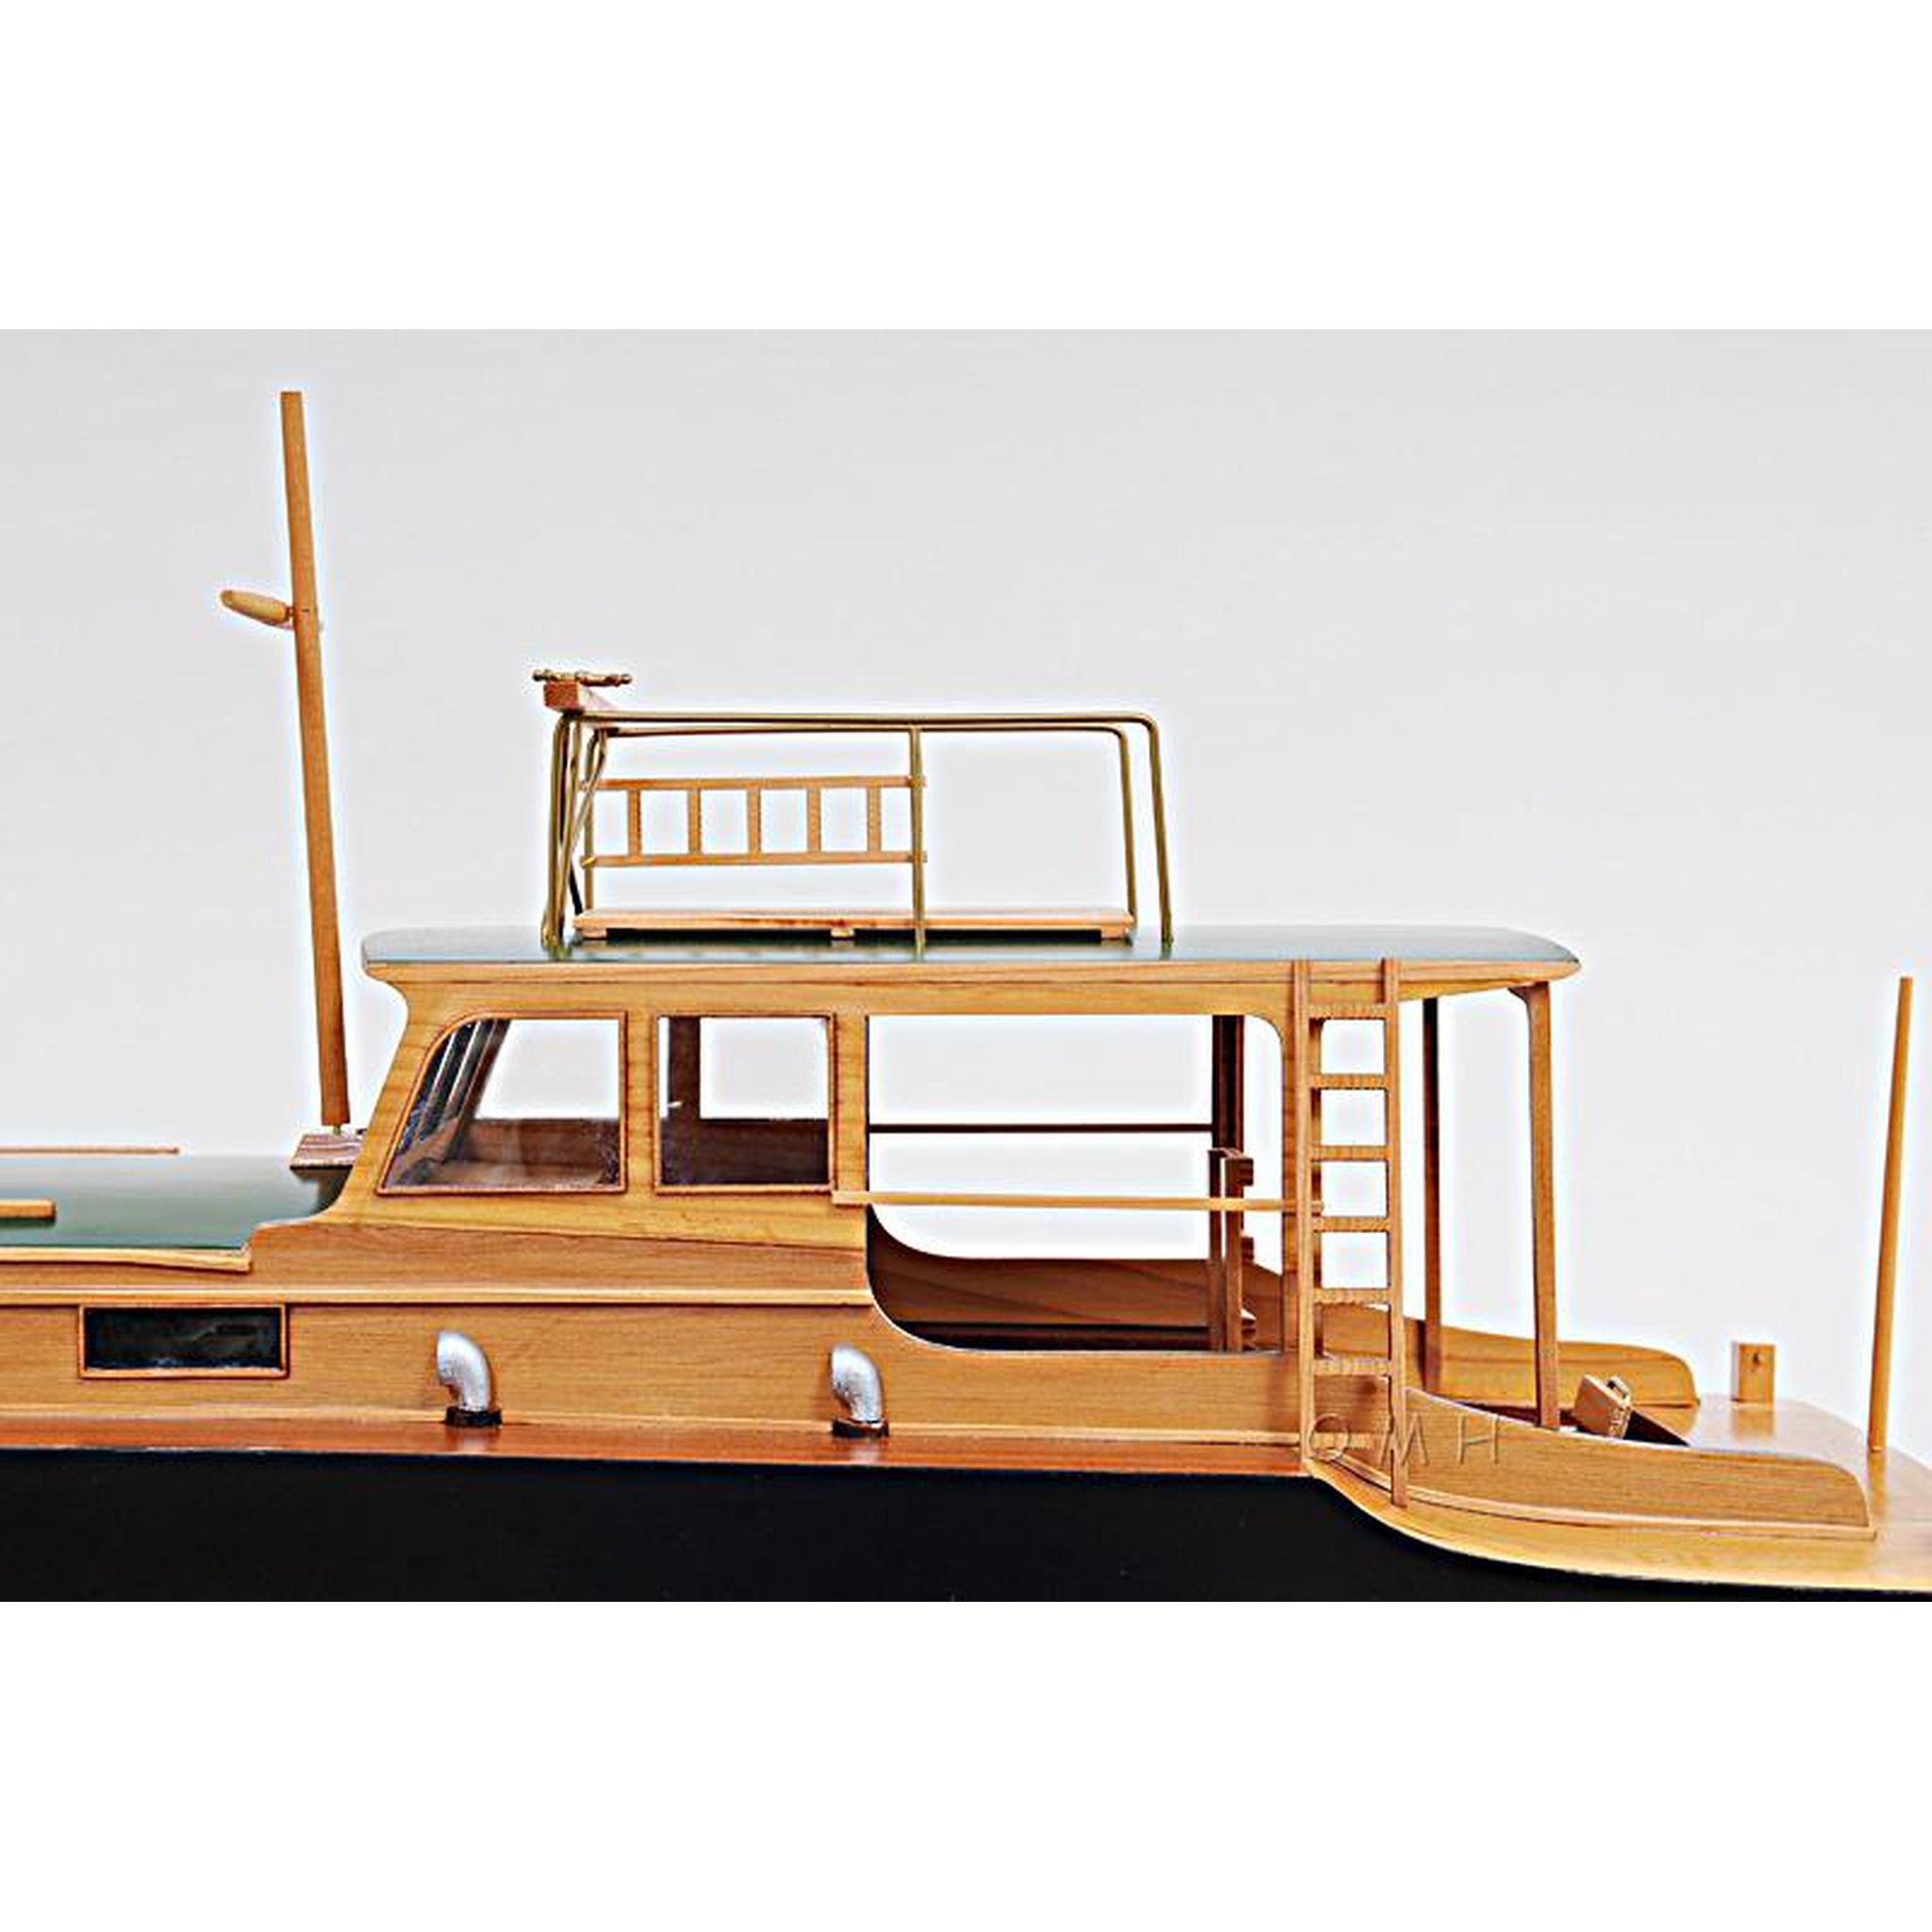 Ernest Hemingway's Pilar Wooden Fishing Boat Model